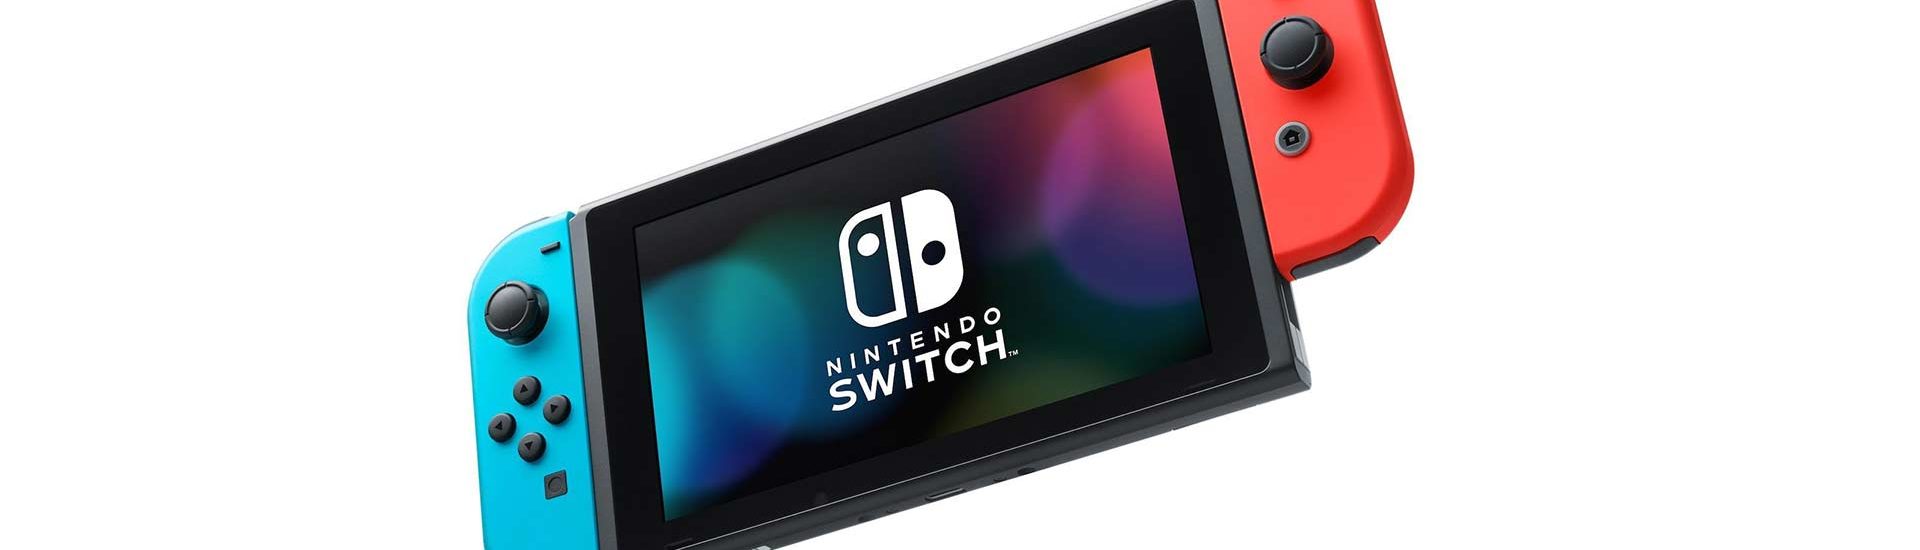 Nintendo Switch: Kuriose Gadgets von Drittherstellern